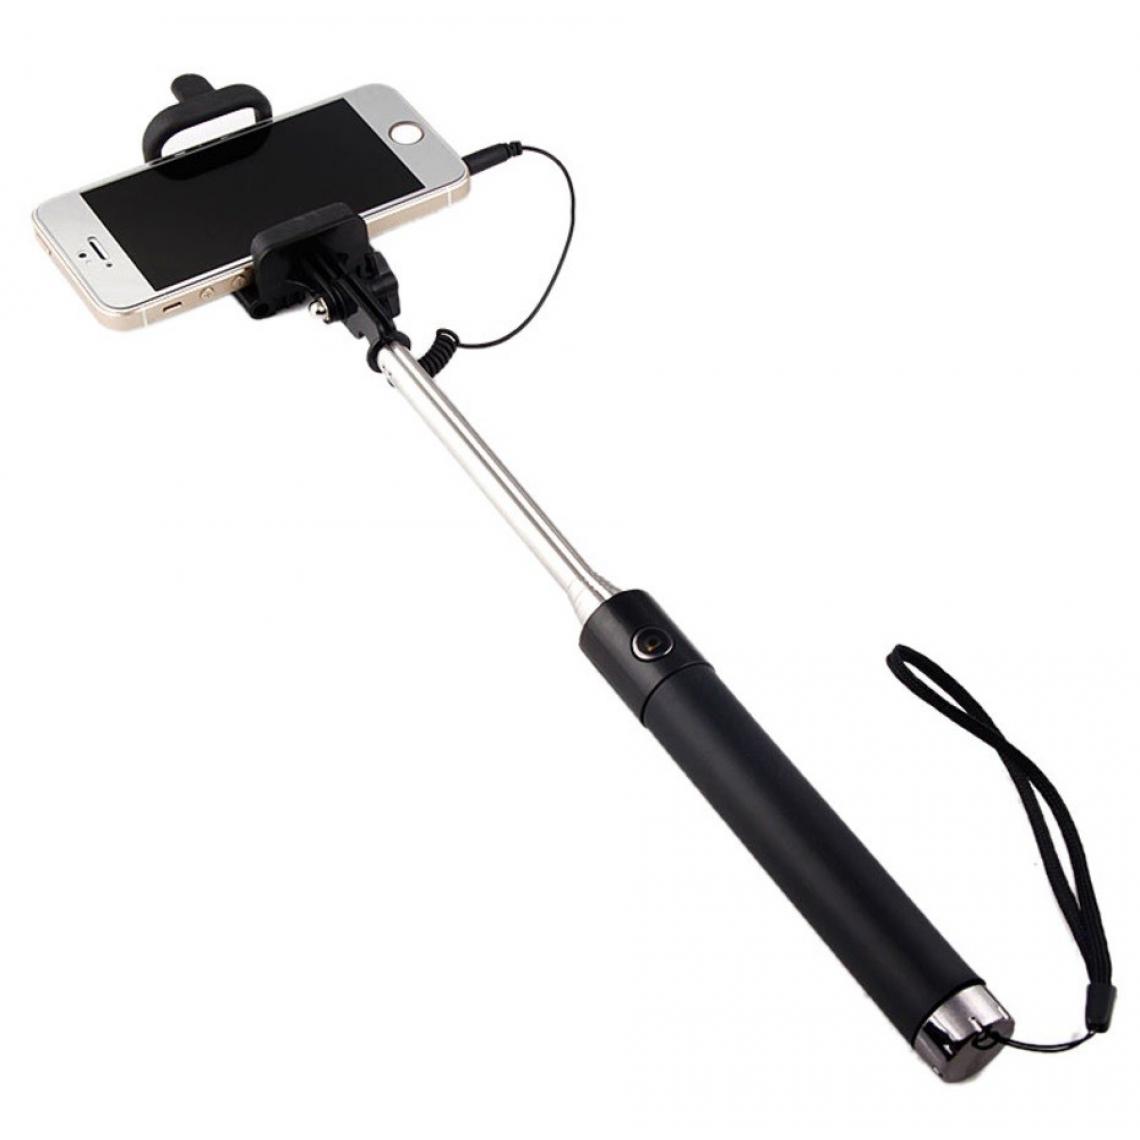 Shot - Perche Selfie Metal pour HUAWEI Mate 20 Smartphone avec Cable Jack Selfie Stick Android IOS Reglable Bouton Photo (NOIR) - Autres accessoires smartphone